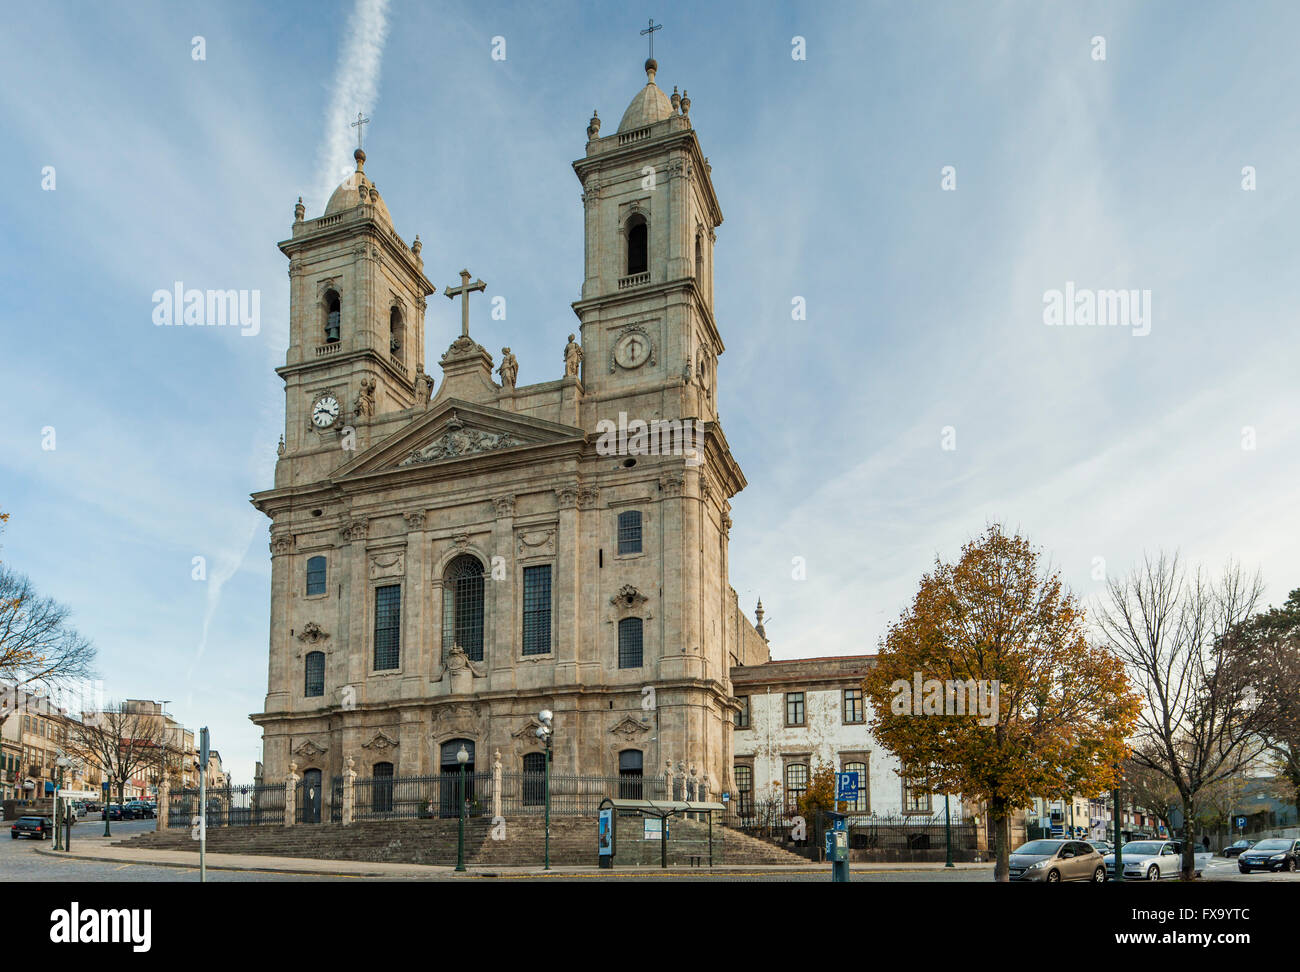 Igreja da Lapa in Porto, Portugal Stock Photo - Alamy